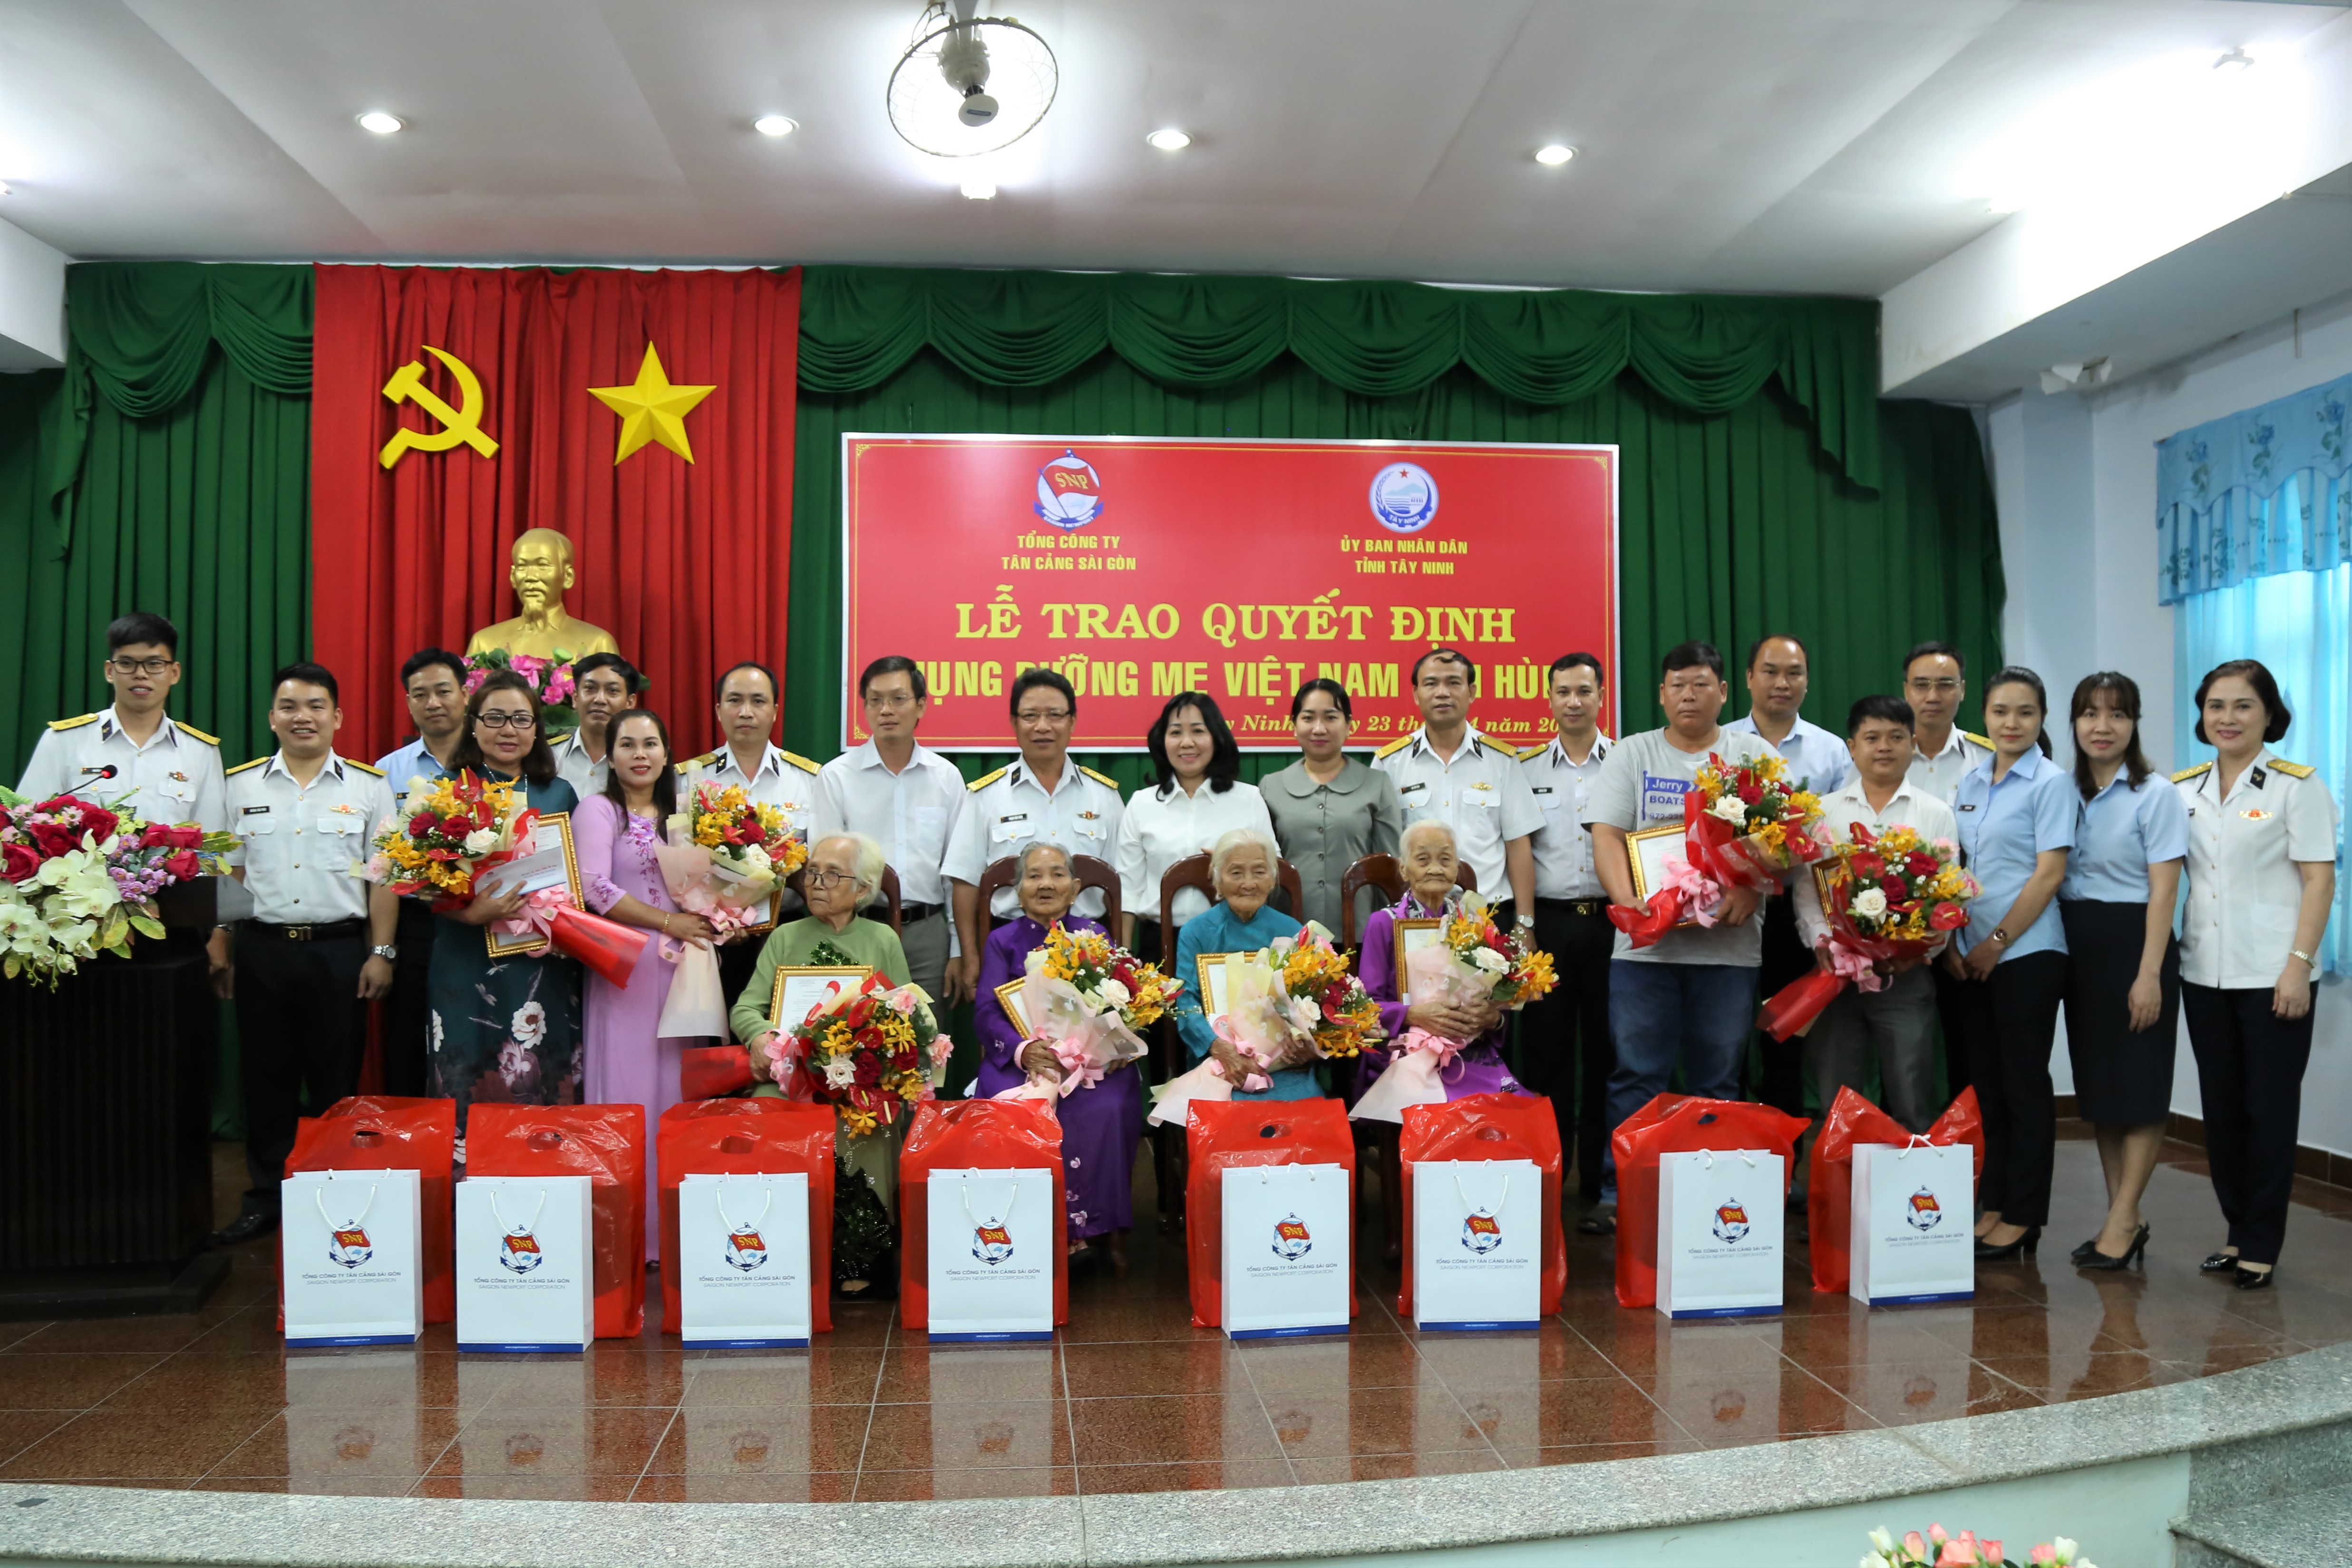  Đại diện lãnh đạo tỉnh Tây Ninh, Tổng Công ty Tân Cảng Sài Gòn cùng 8 Bà mẹ Việt Nam Anh Hùng được nhận phụng dưỡng suốt đời